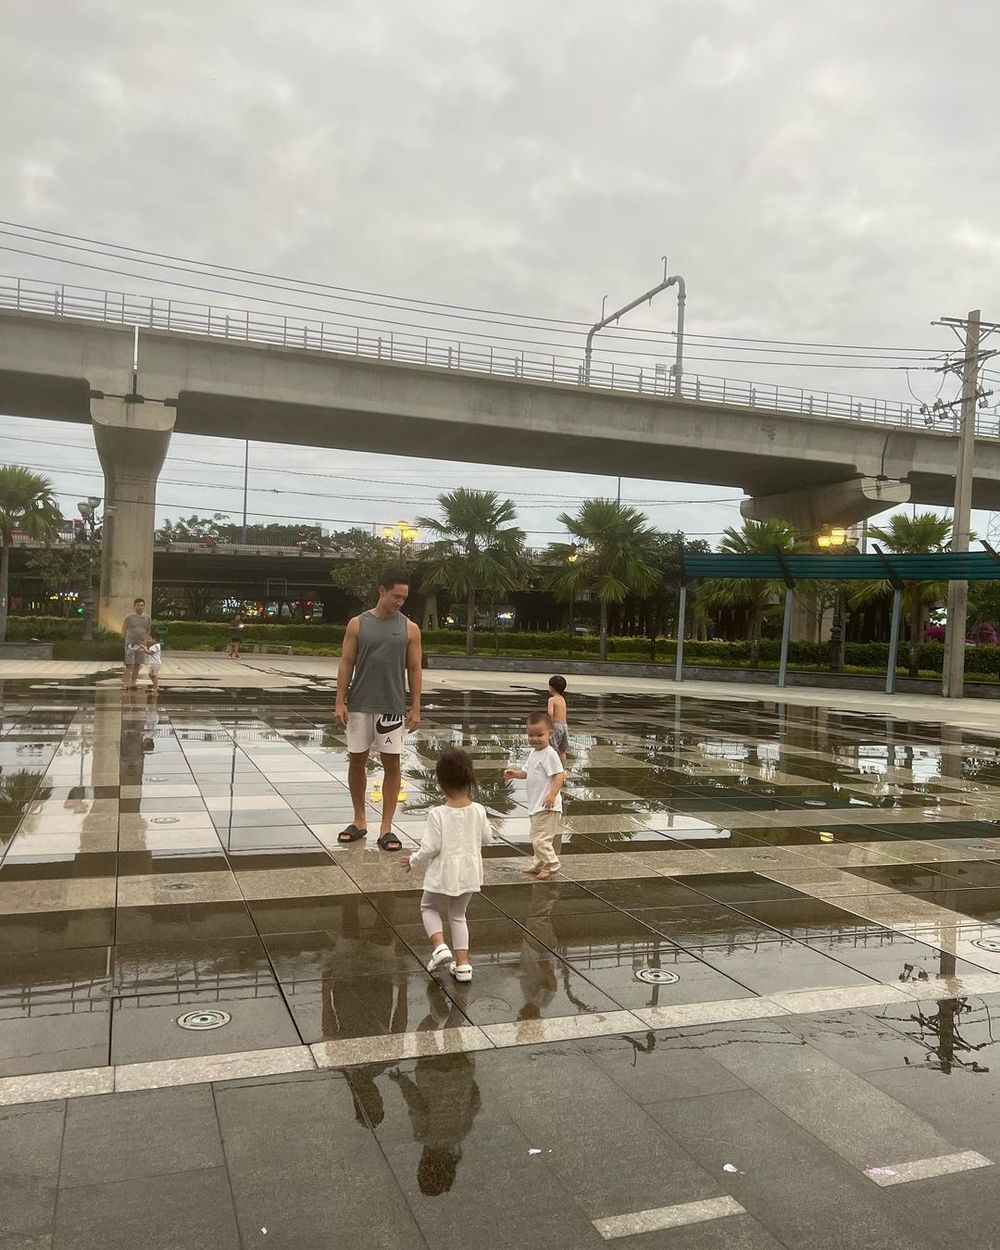  
Gia đình Lisa - Leon đi chơi ở công viên. (Ảnh: Chụp màn hình Instagram @henryLisaLeon)